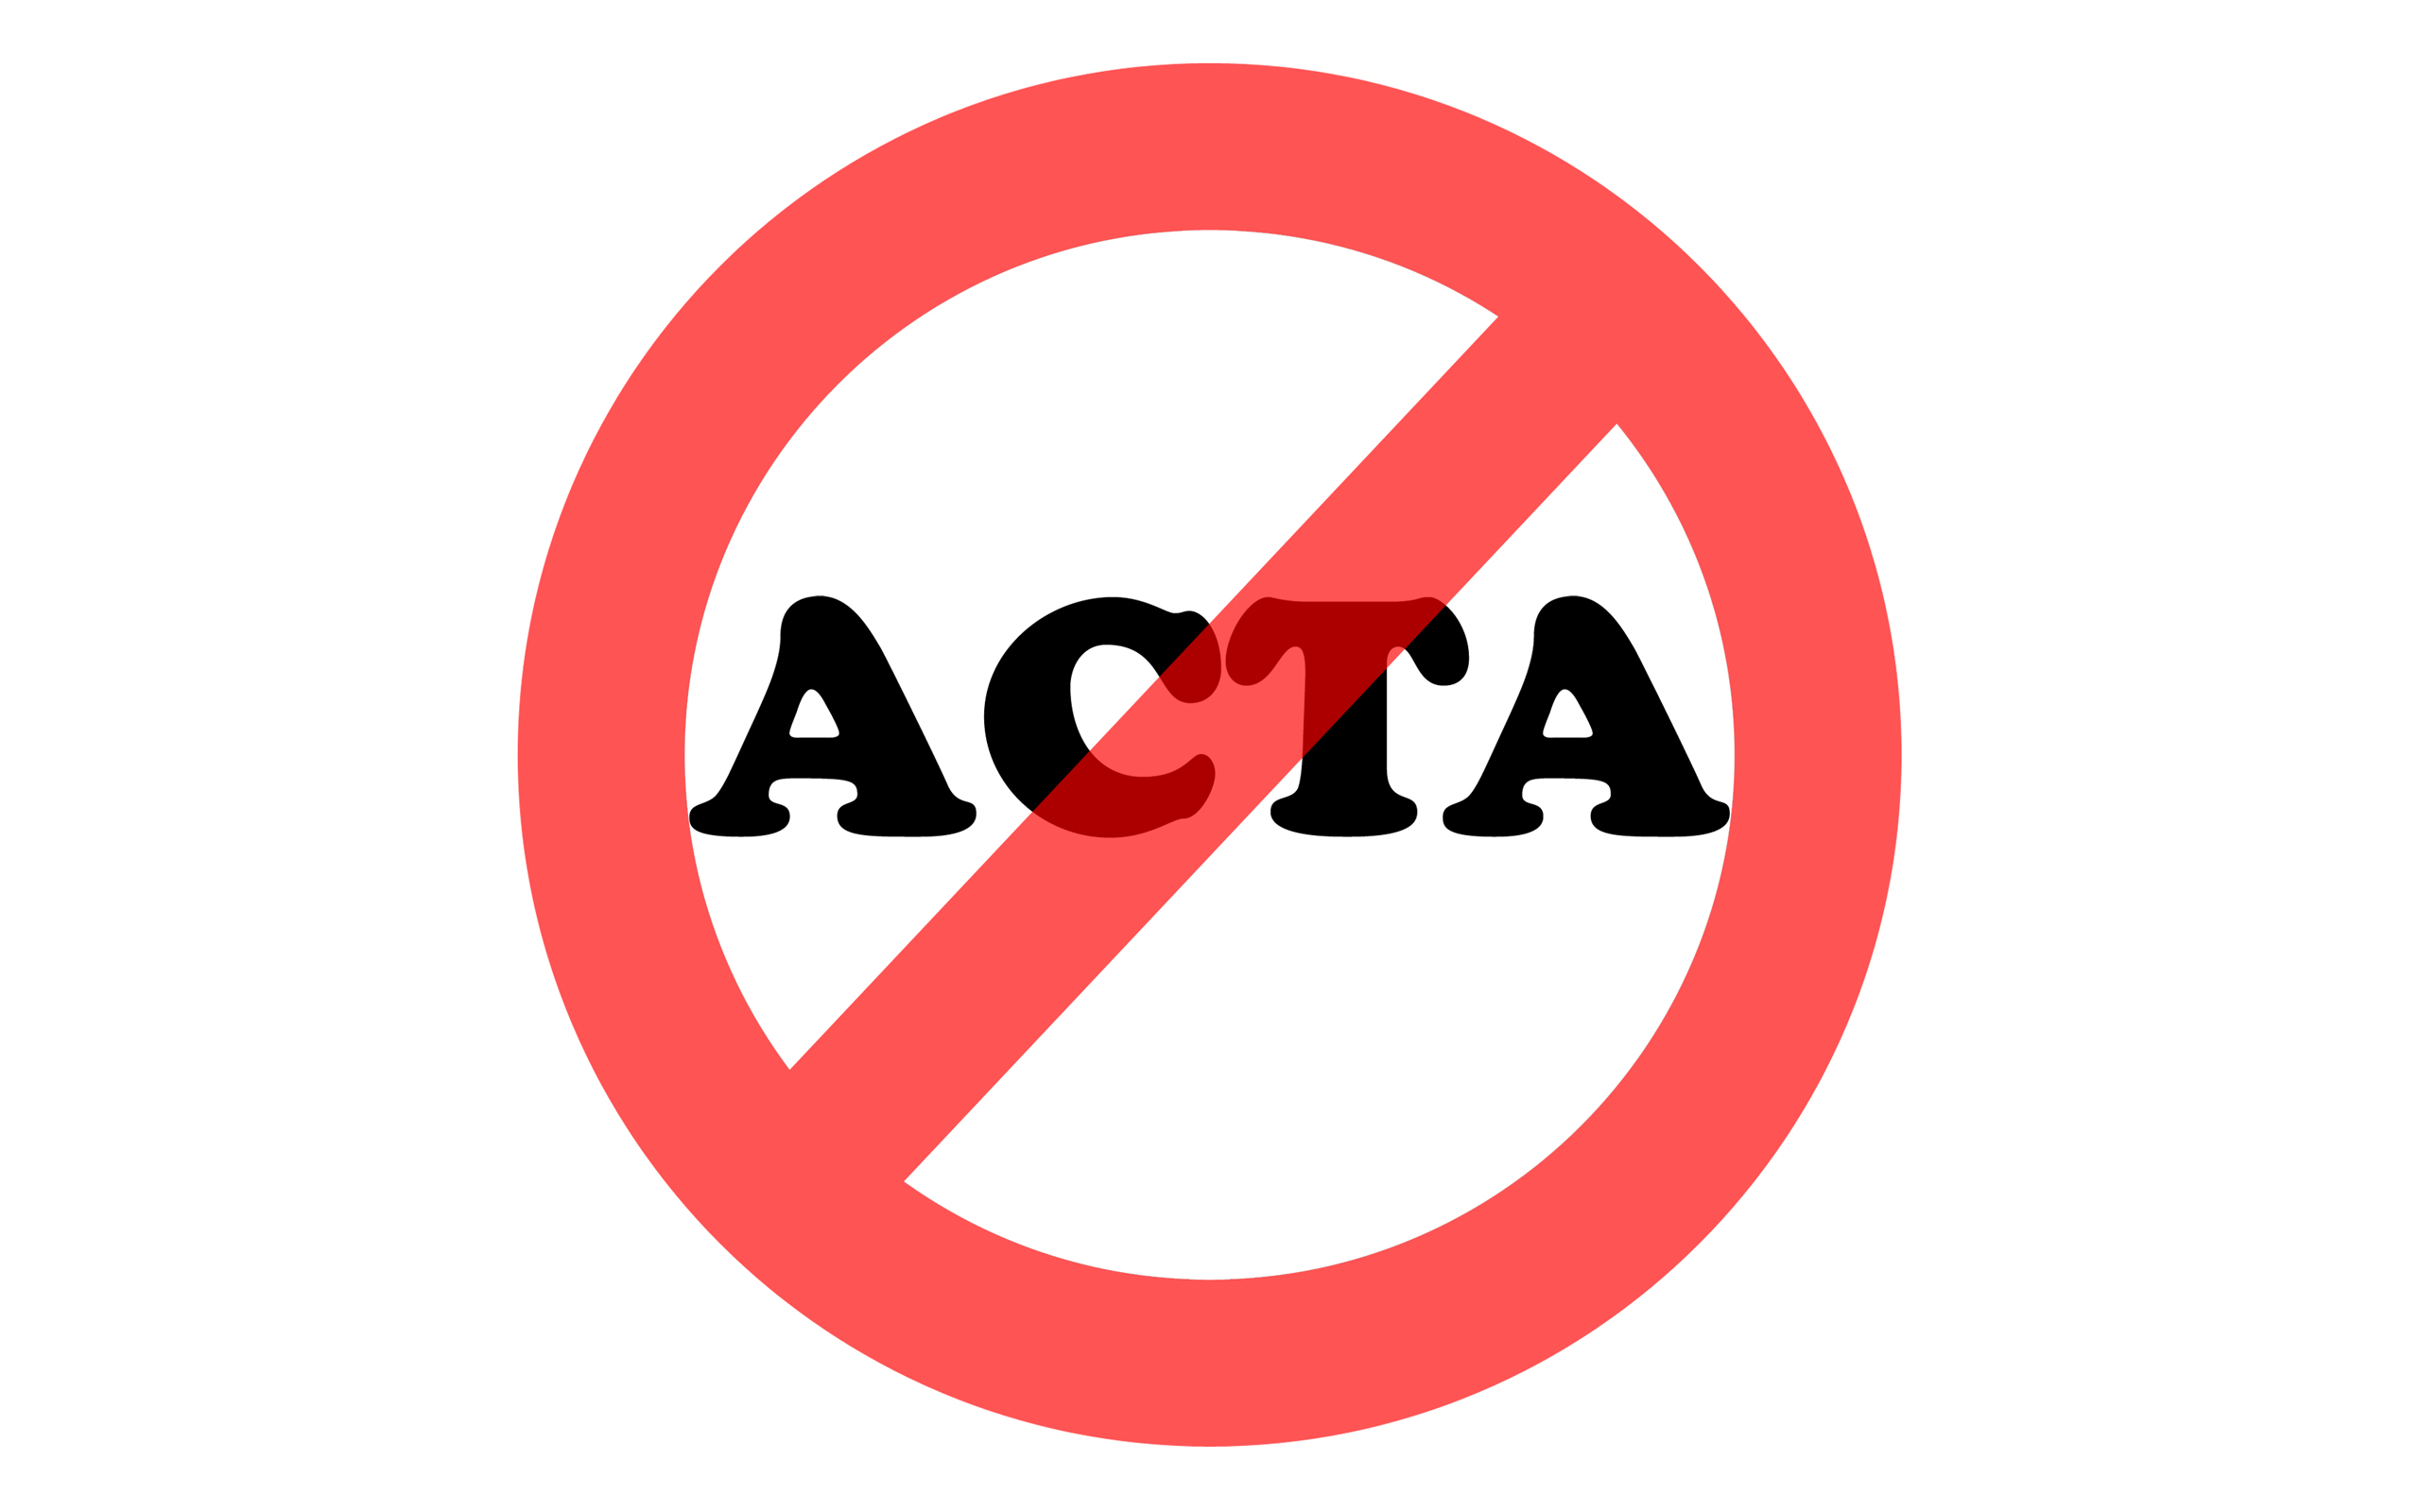 Acta 005 2560x1600 Stop Acta